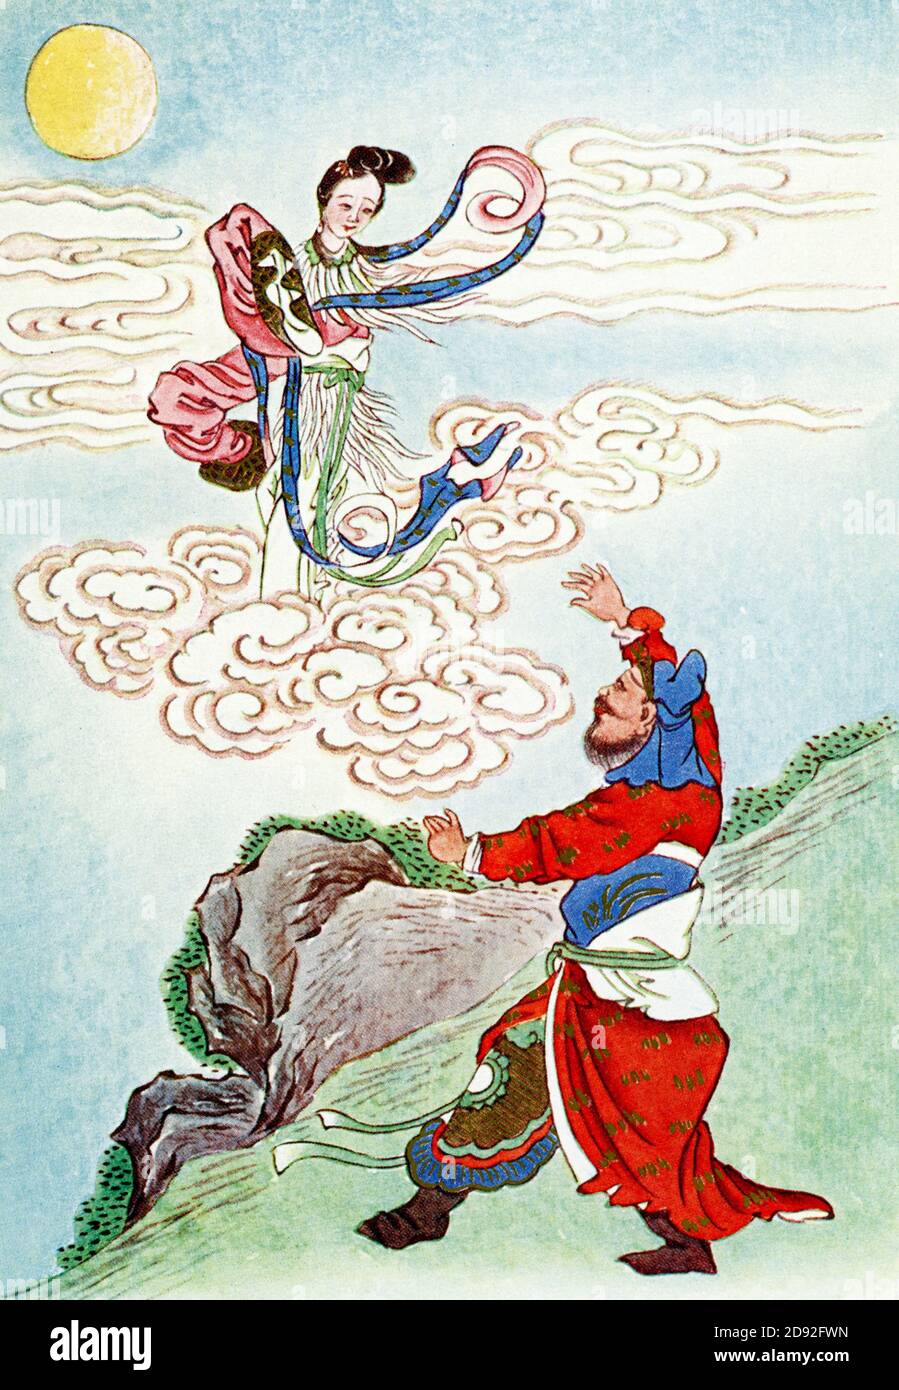 Heng o Flies alla Luna. Chang'e, o Chang-o, originariamente conosciuto come Heng'e, è la dea cinese della Luna. È oggetto di numerose leggende della mitologia cinese, la maggior parte delle quali incorpora diversi dei seguenti elementi: Houyi l'arciere, un imperatore benevolo o malevolo, un elisir della vita, e la Luna. È sposata con l'arciere Houyi. Foto Stock